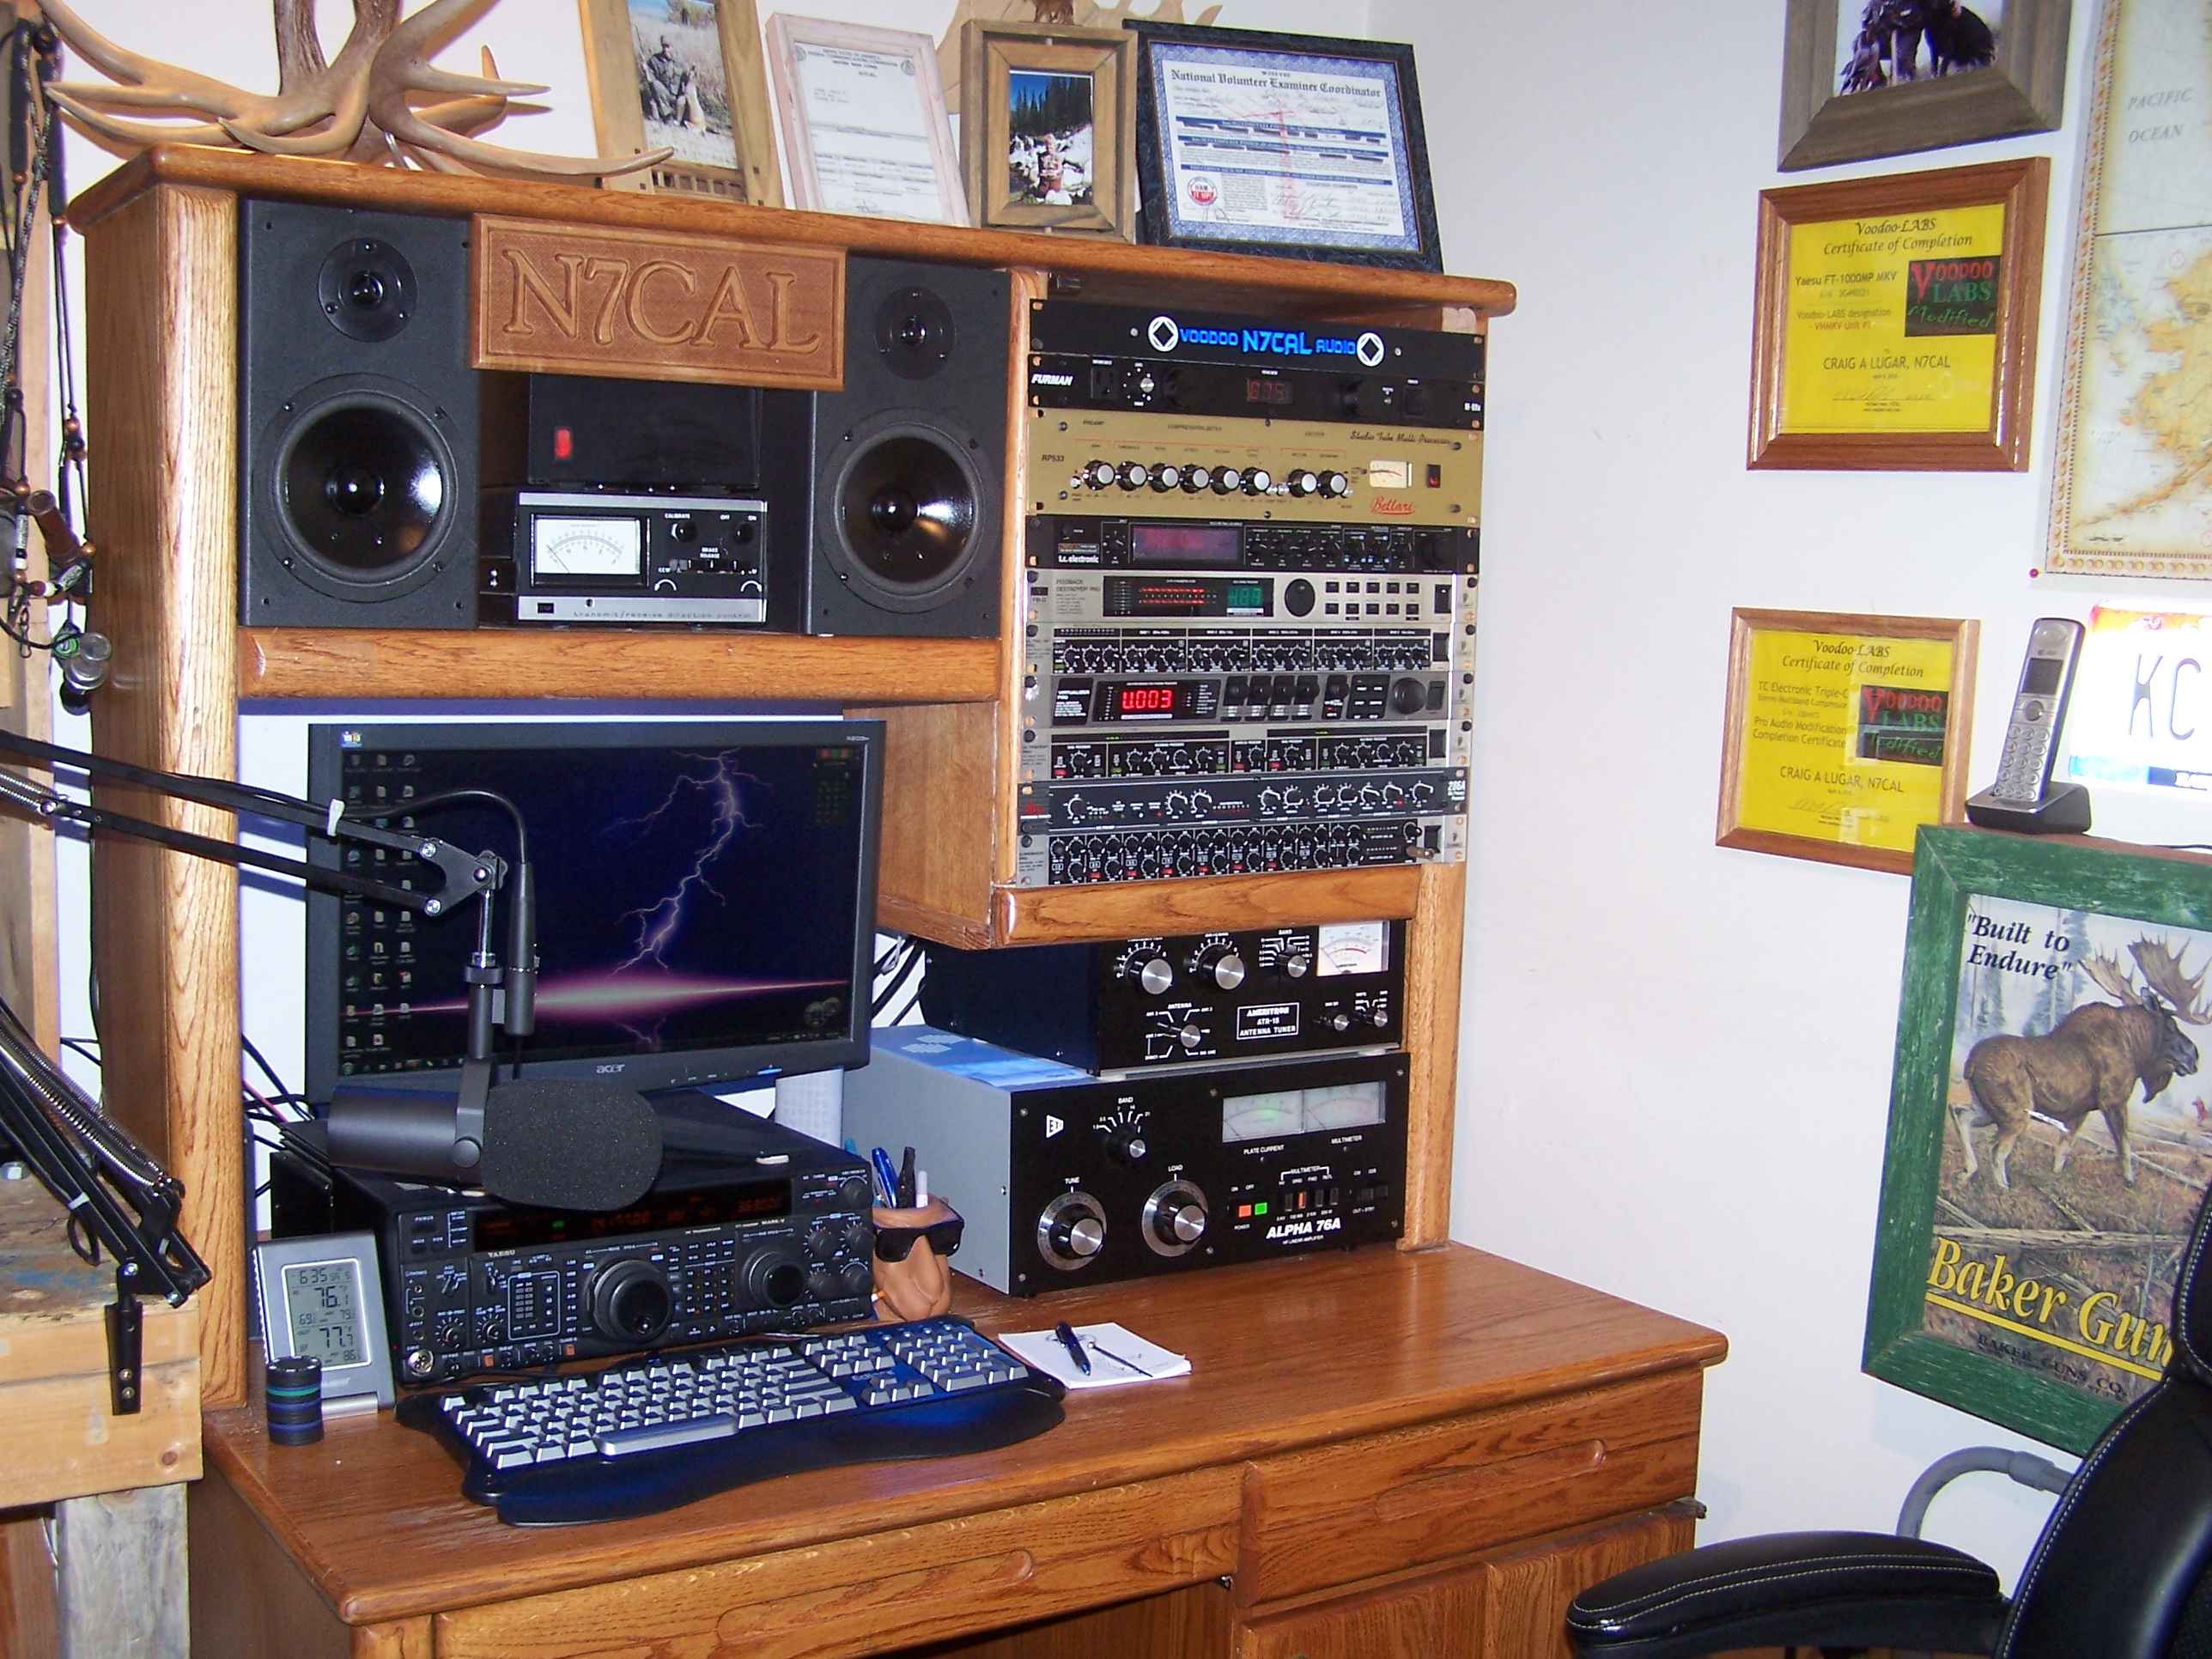 Here's the old N7CAL Studio!